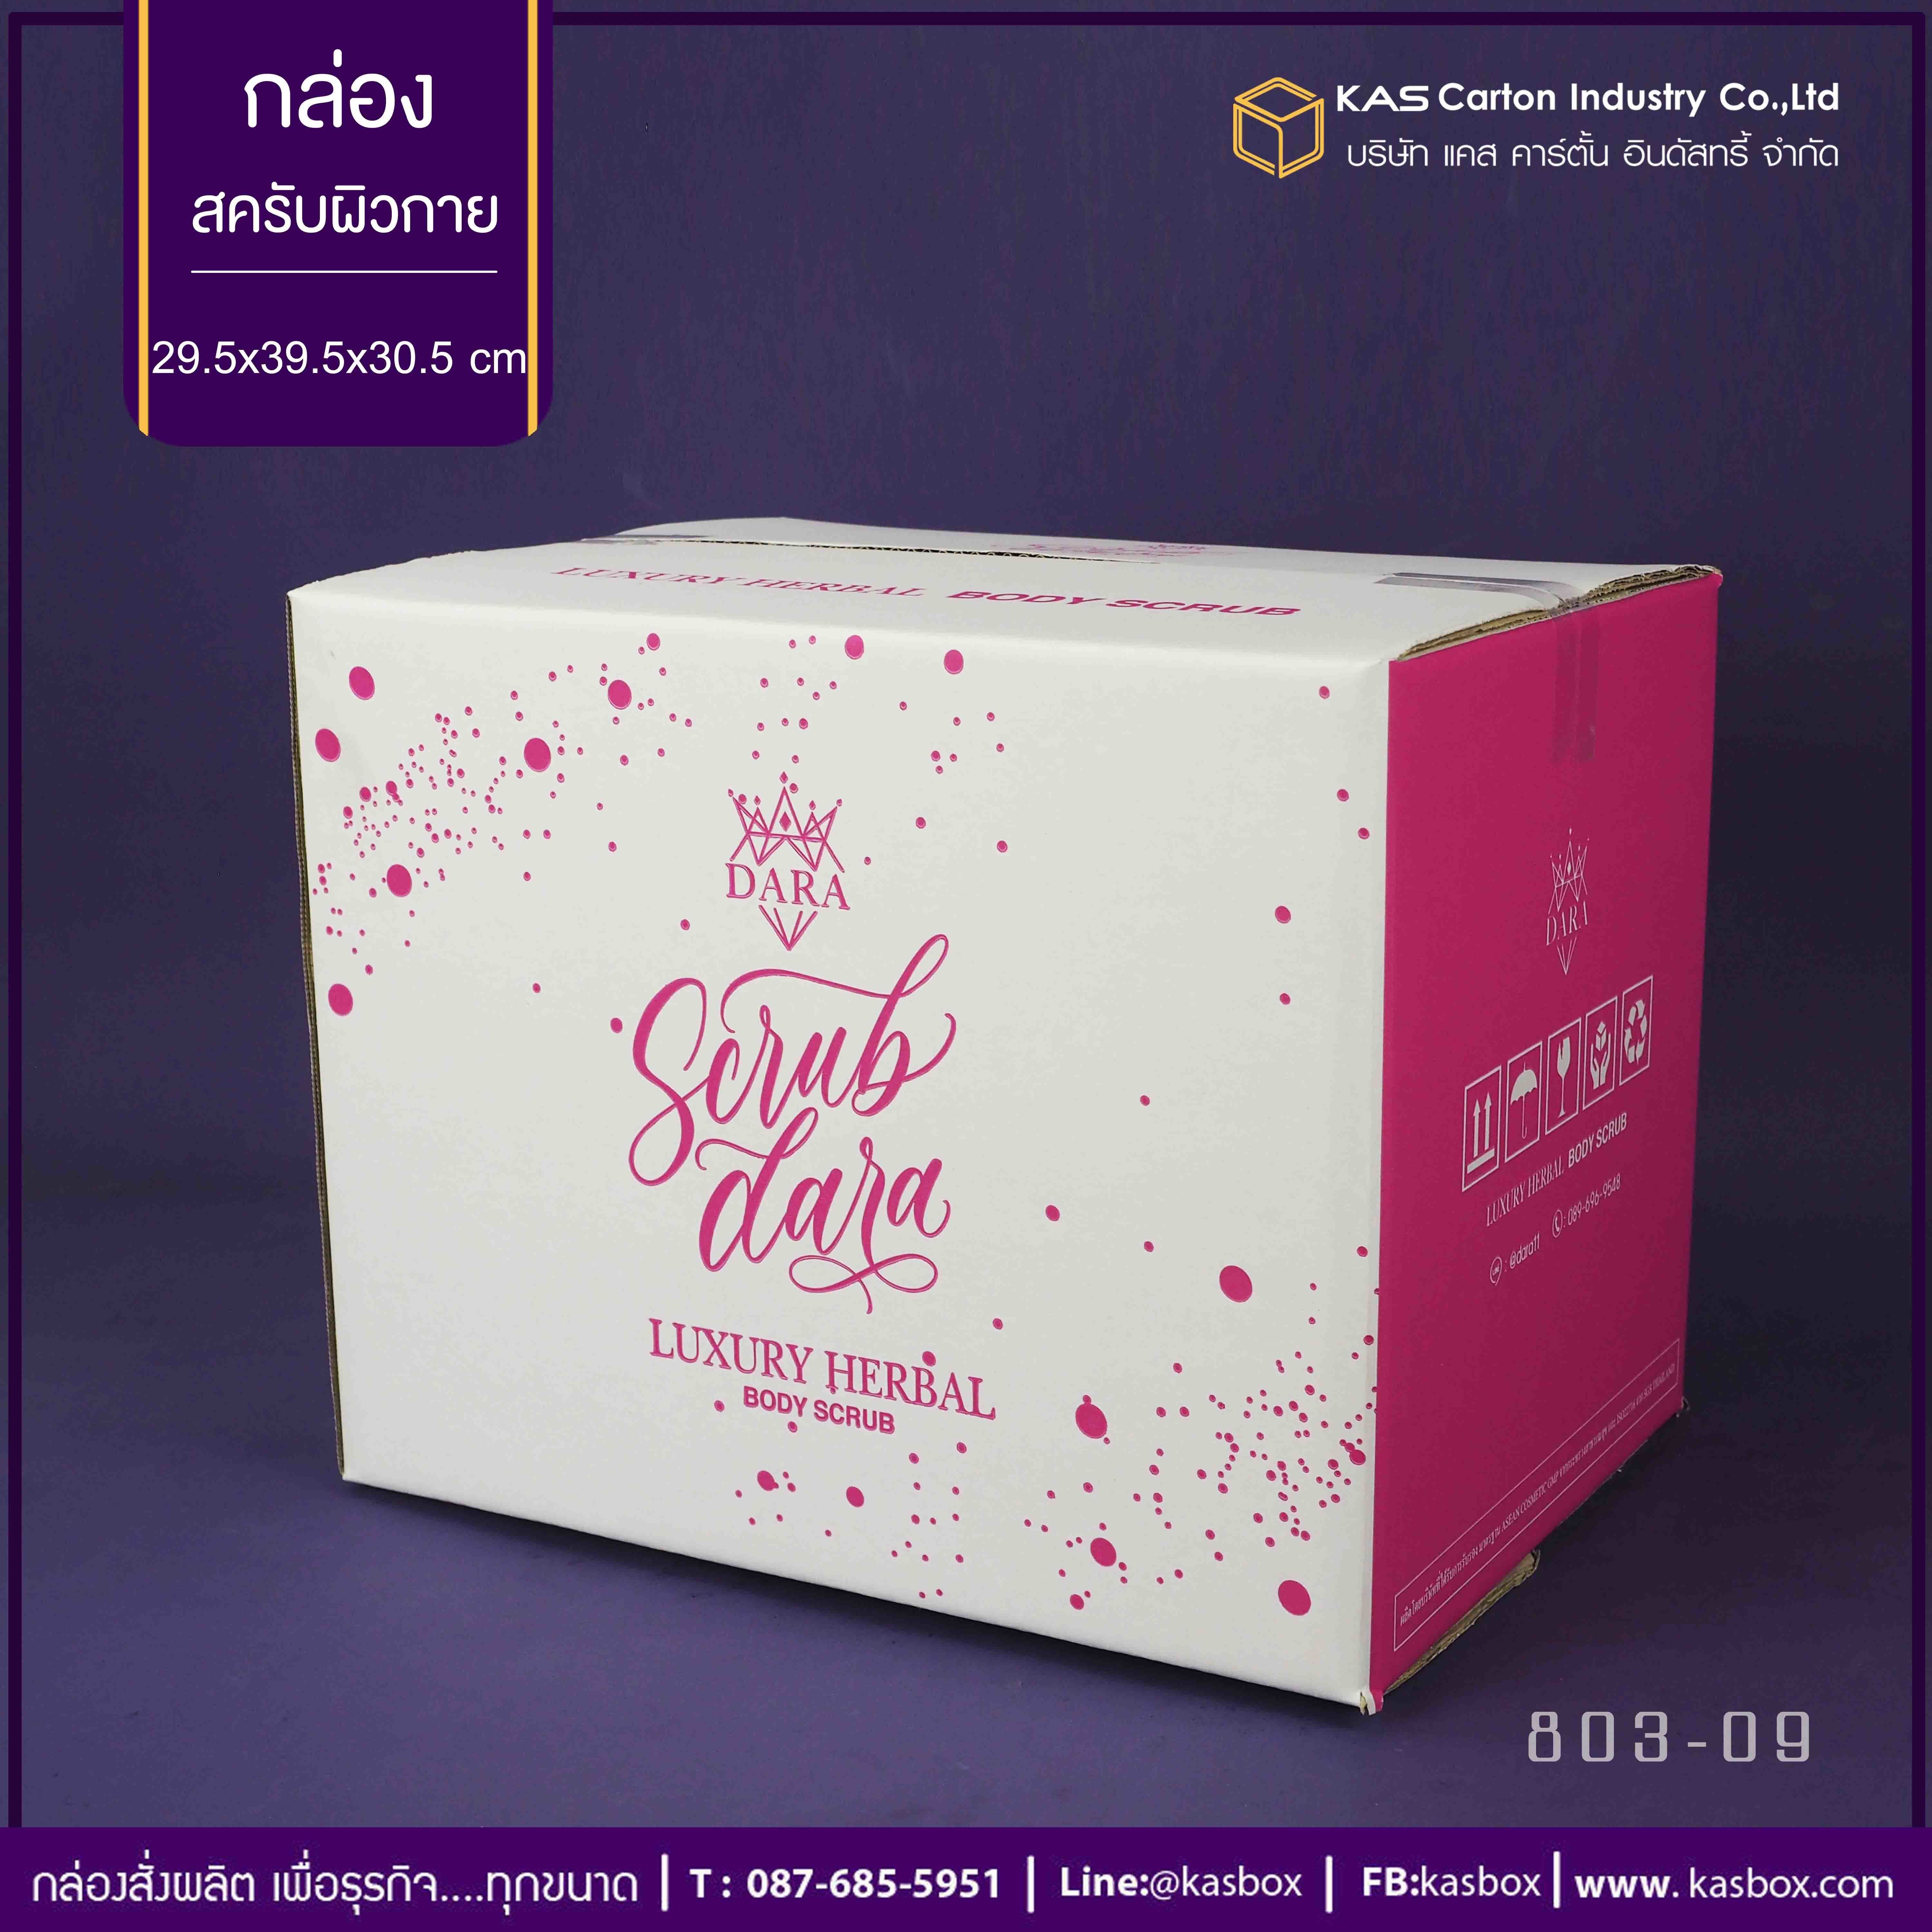 กล่องลูกฟูก สำเร็จรูป และ สั่งผลิต ตามความต้องการลูกค้า กล่องลูกฟูก SME กล่องกระดาษลูกฟูก สินค้าสครับผิวกาย Scrub Dara